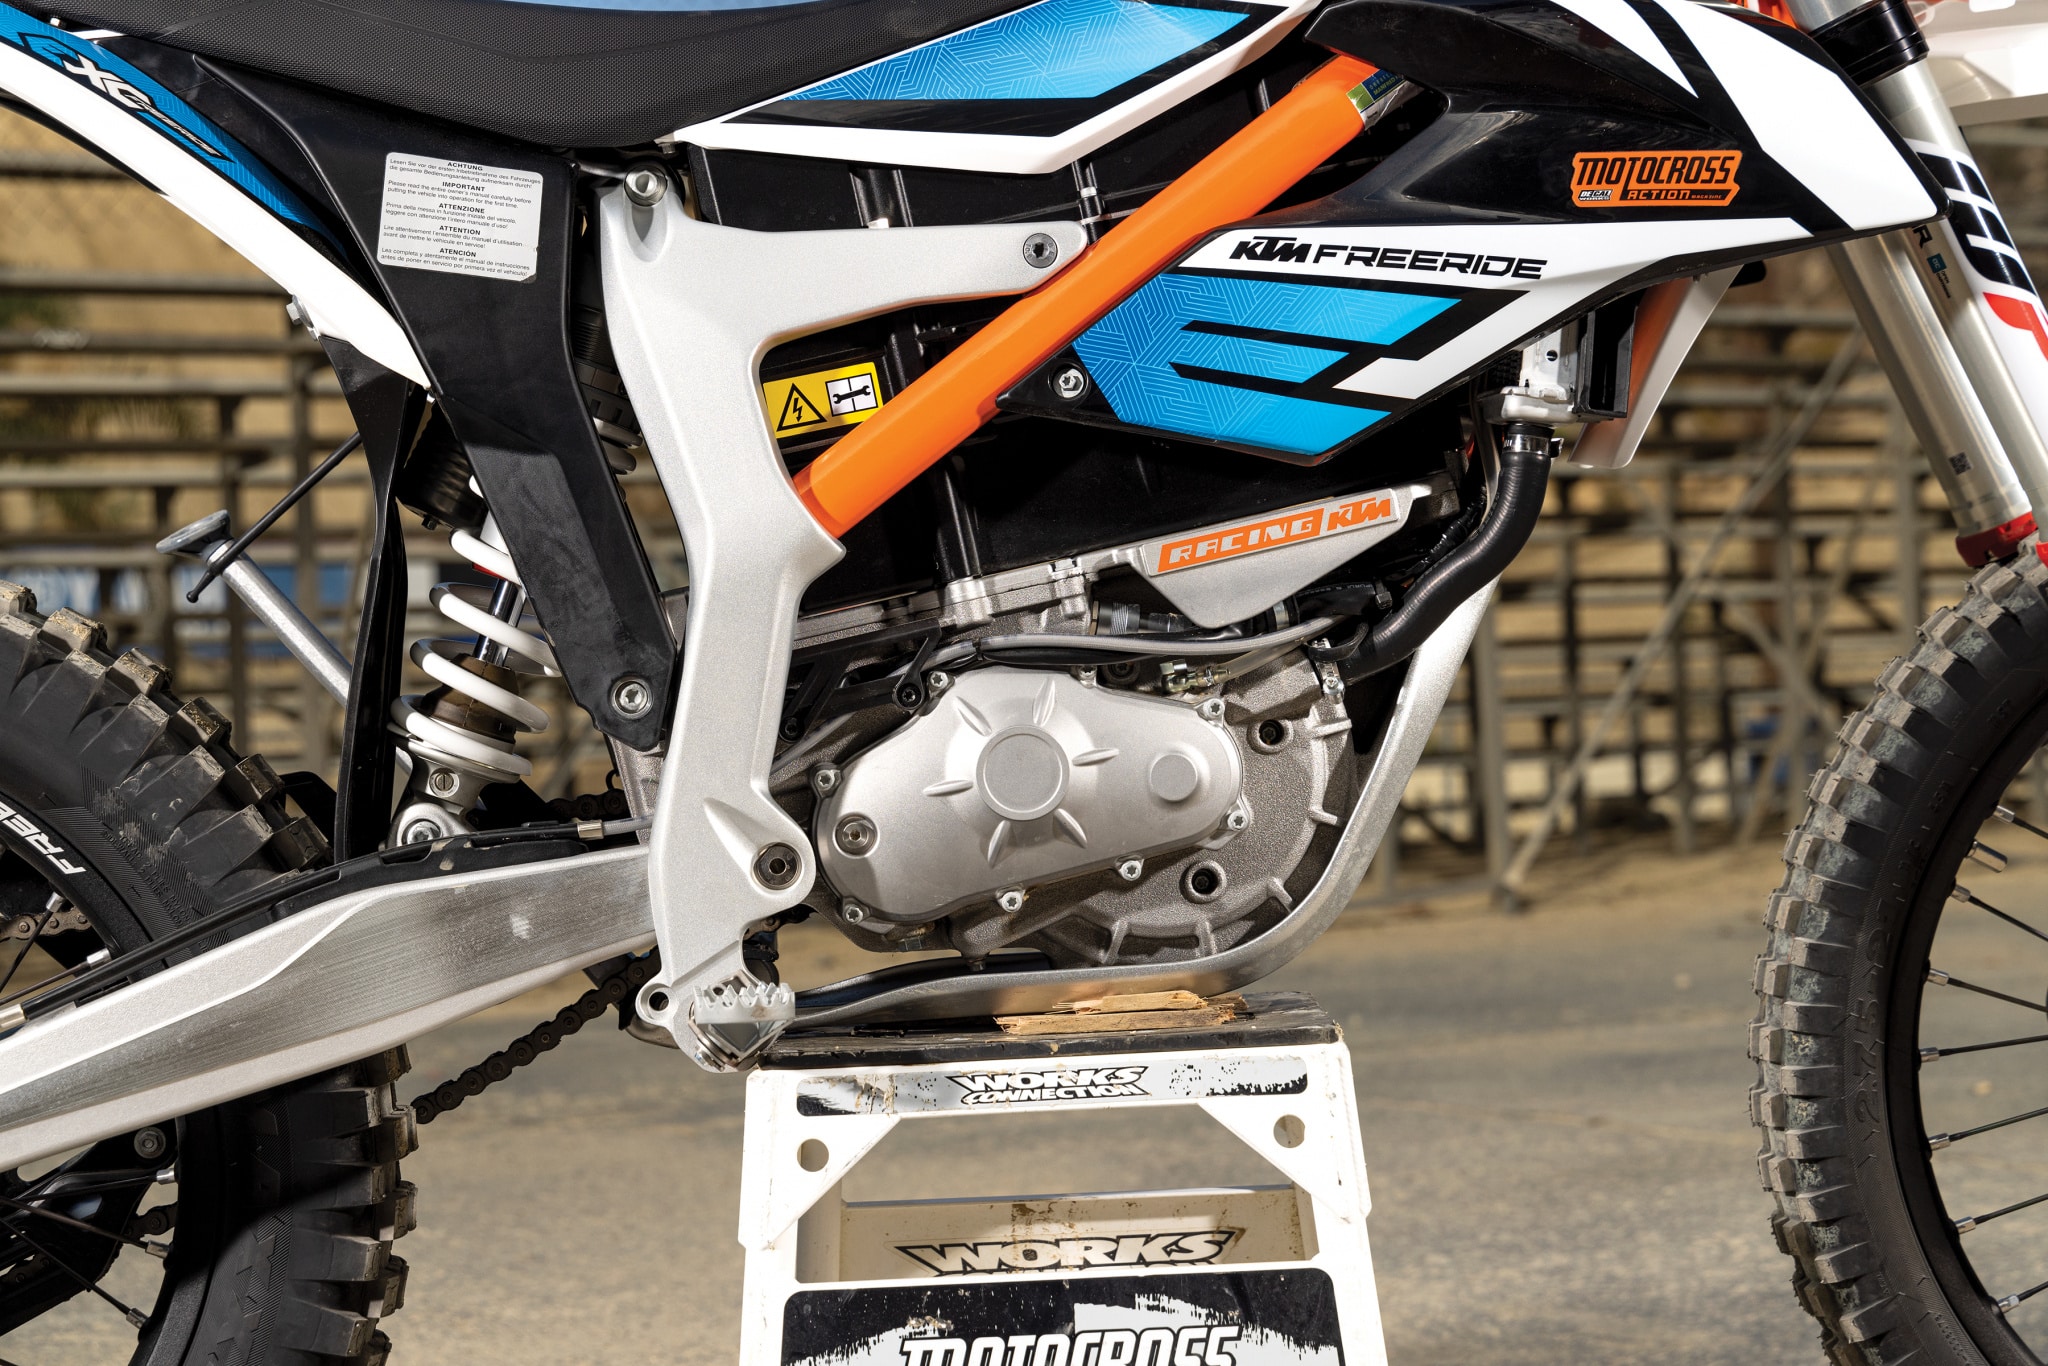 Moto de motocross: nova elétrica quer deixar KTM's no chinelo